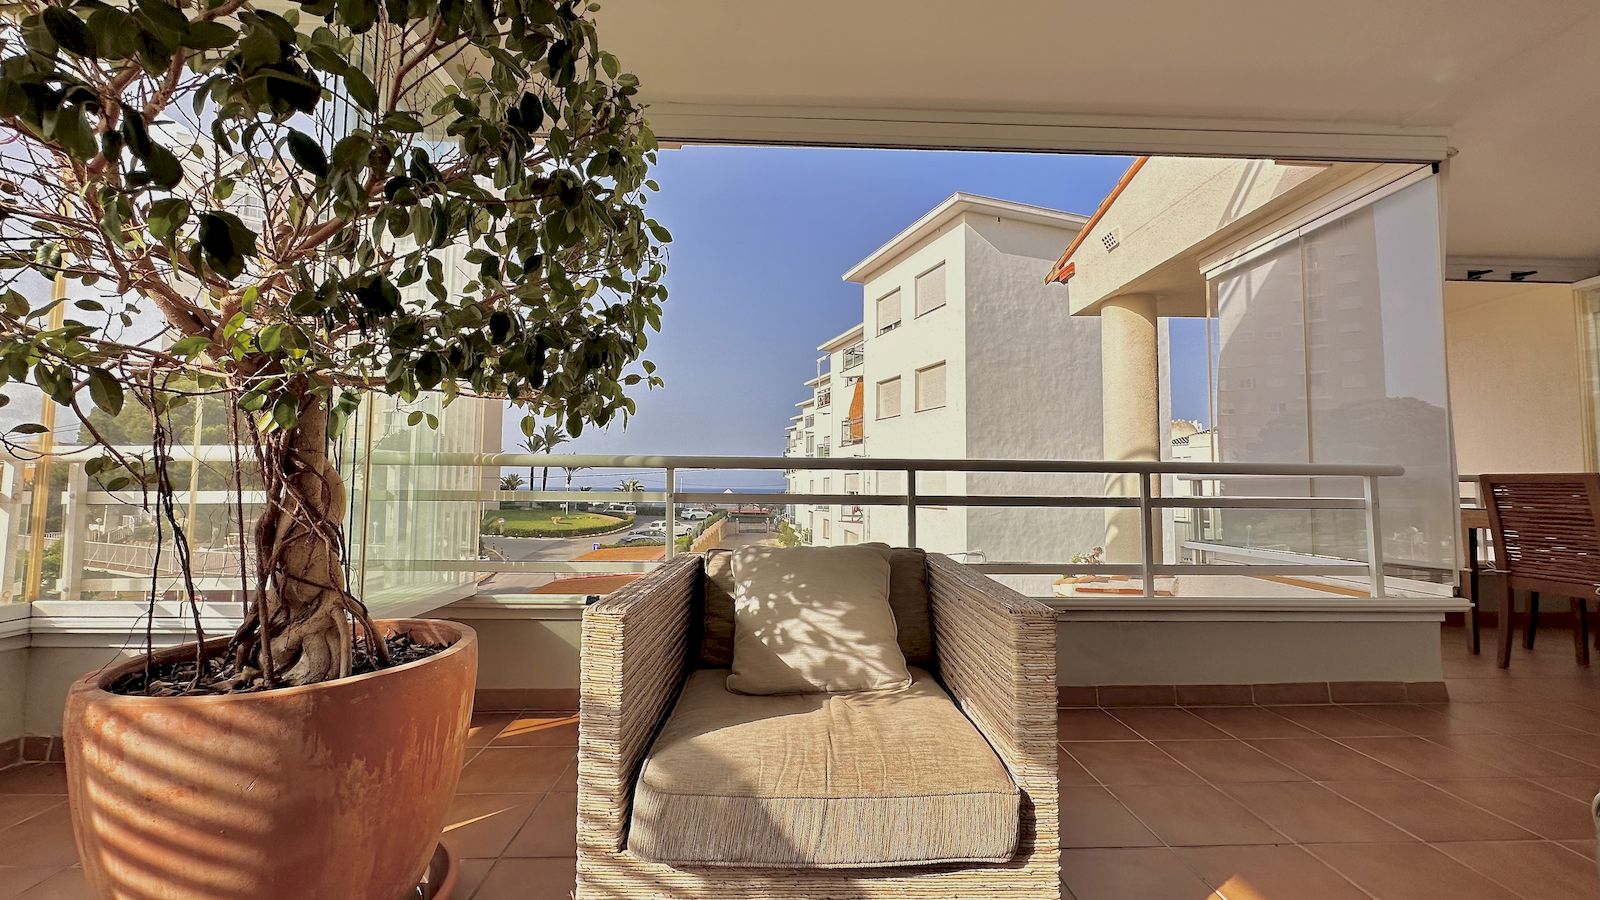 Duplex appartement te huur met zeezicht in Playa del Arenal - Javea